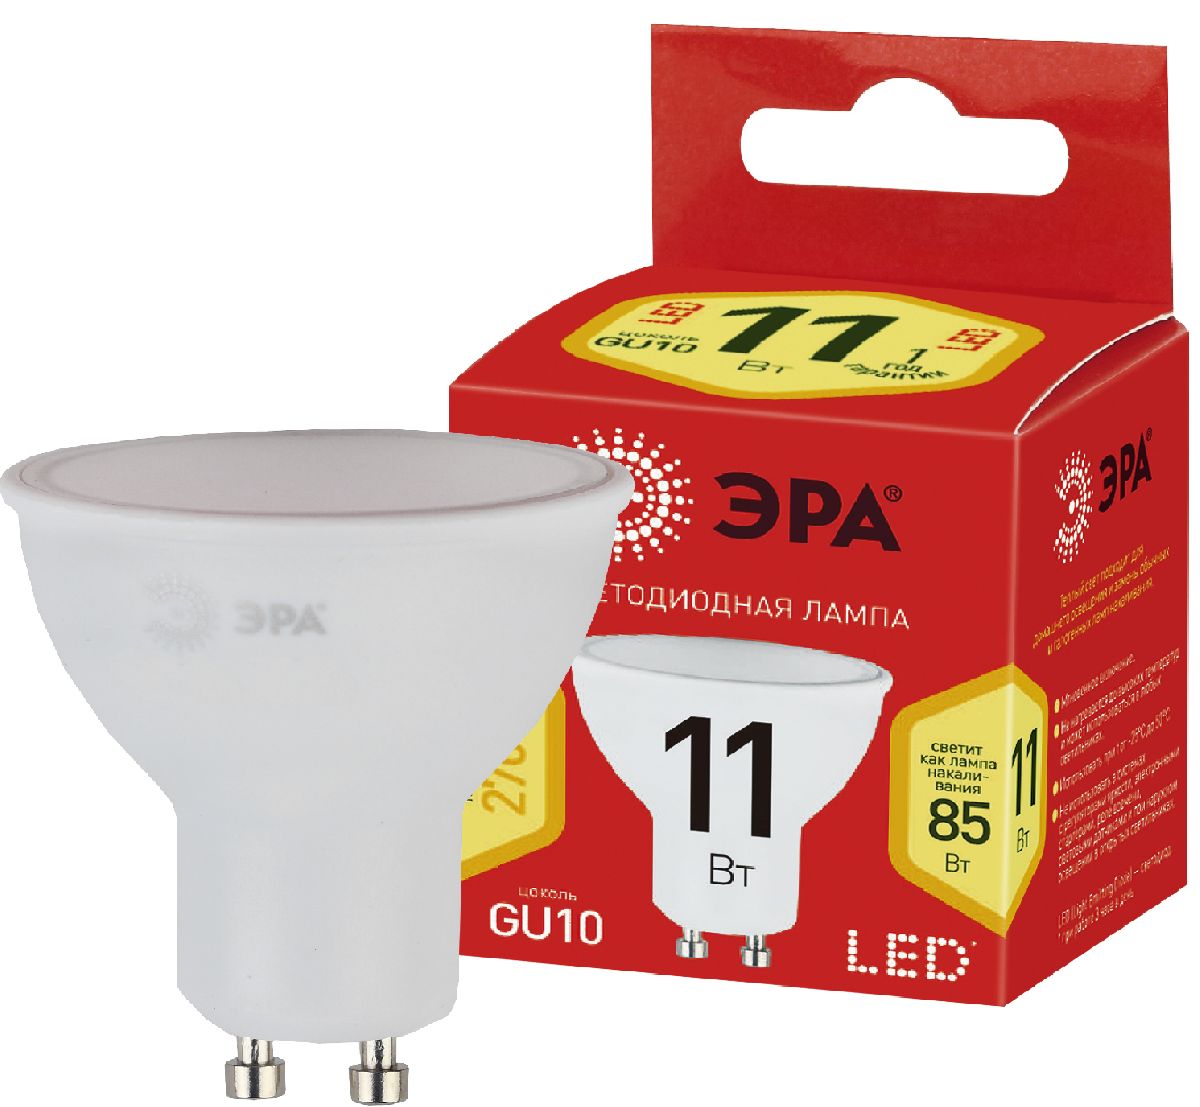 Лампа светодиодная Эра GU10 11W 2700K ECO LED MR16-11W-827-GU10 Б0040877